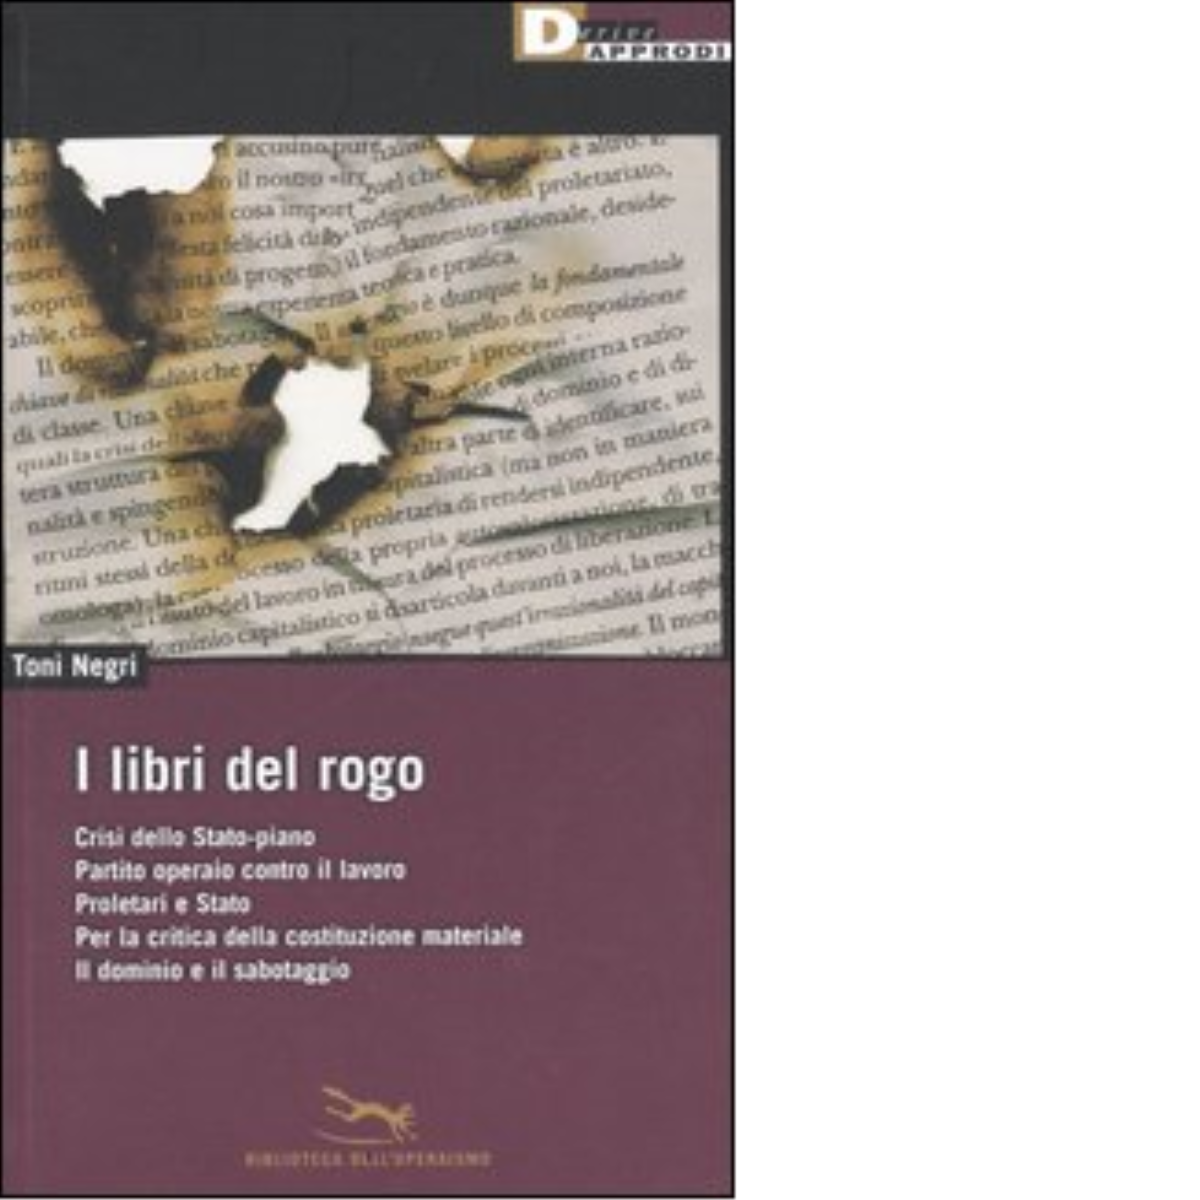 I LIBRI DEL ROGO. di TONI NEGRI - DeriveApprodi editore, 2006